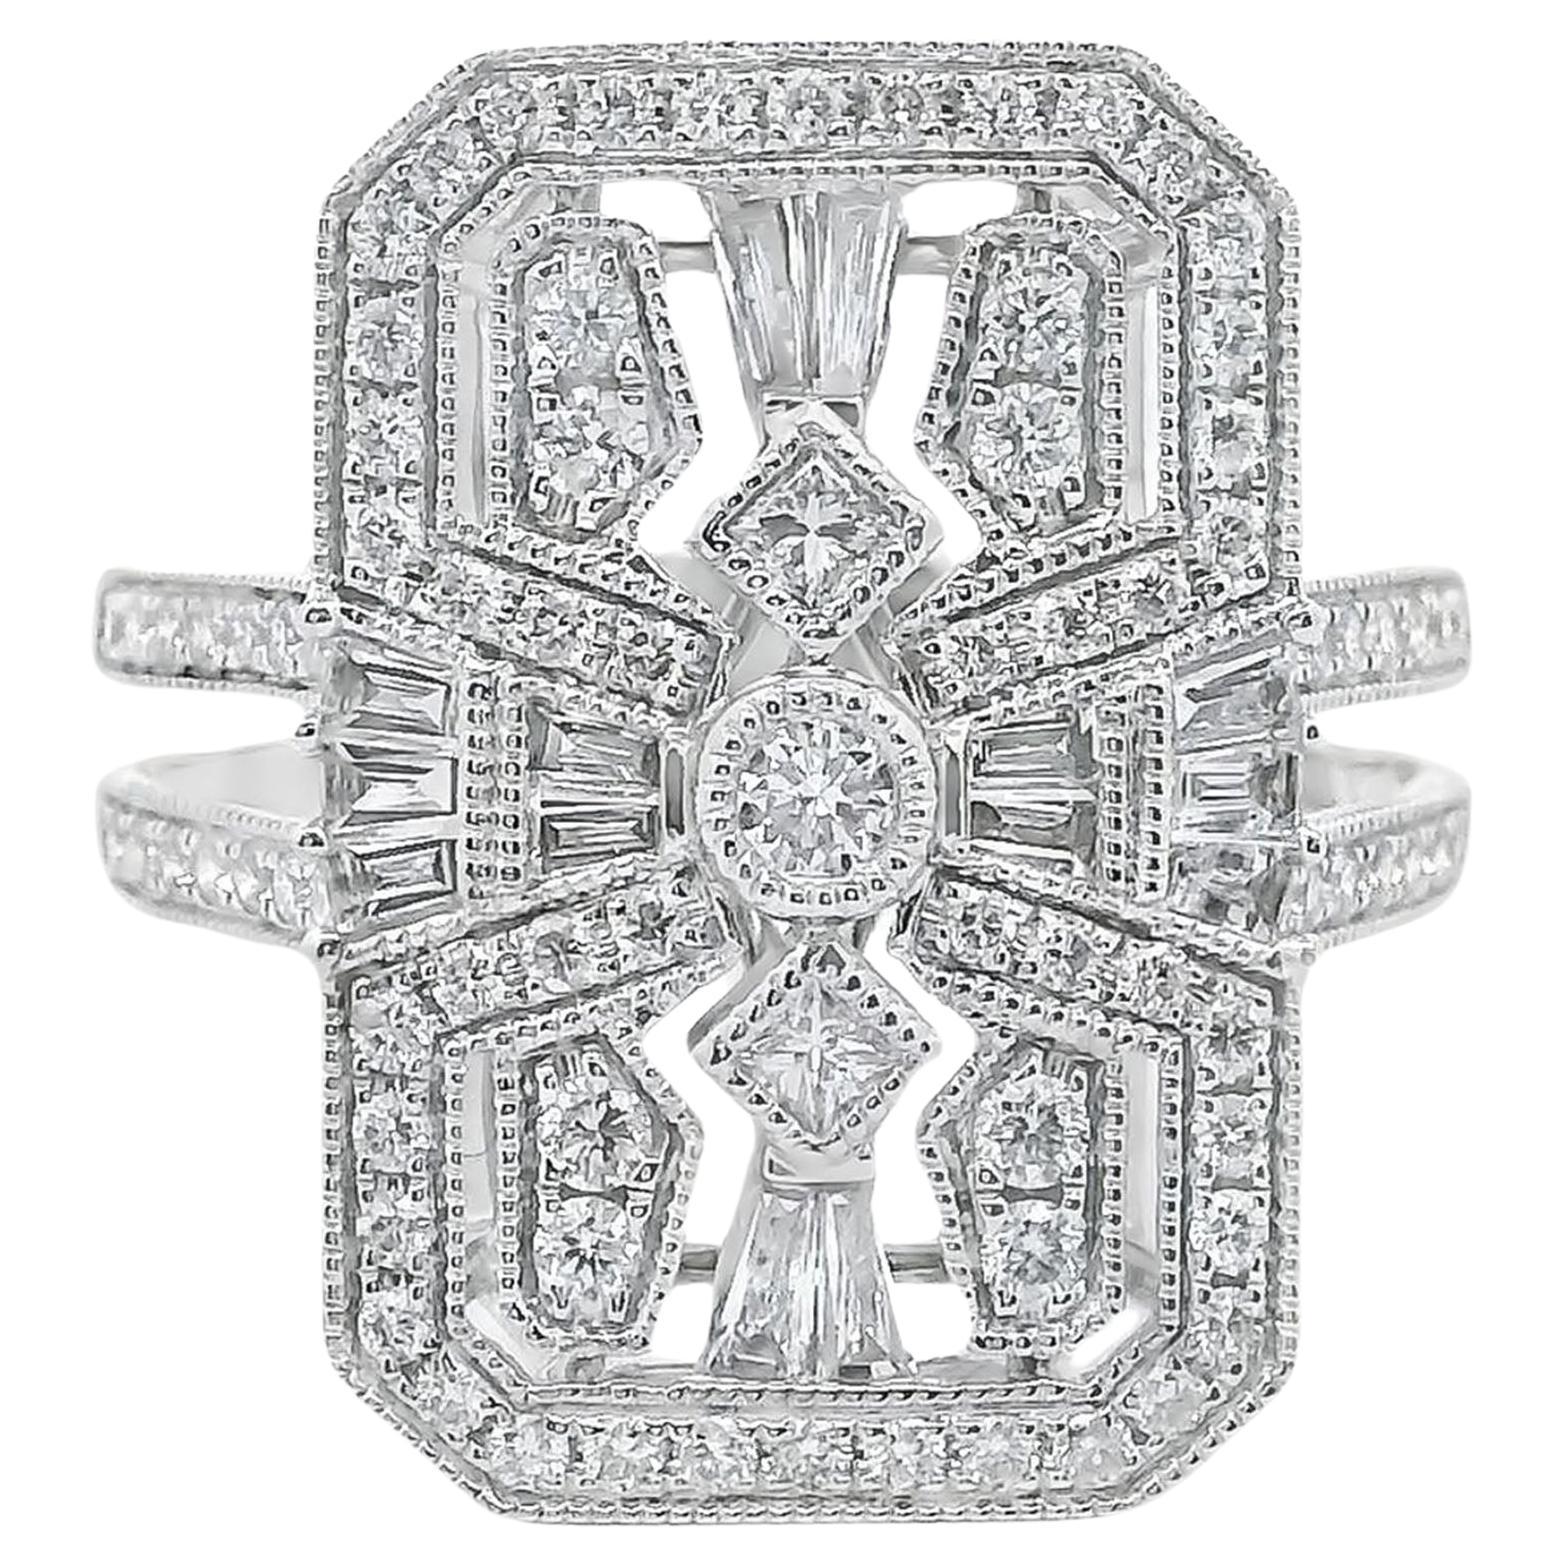 18K White Gold Art Deco Inspired Diamond Ring For Sale